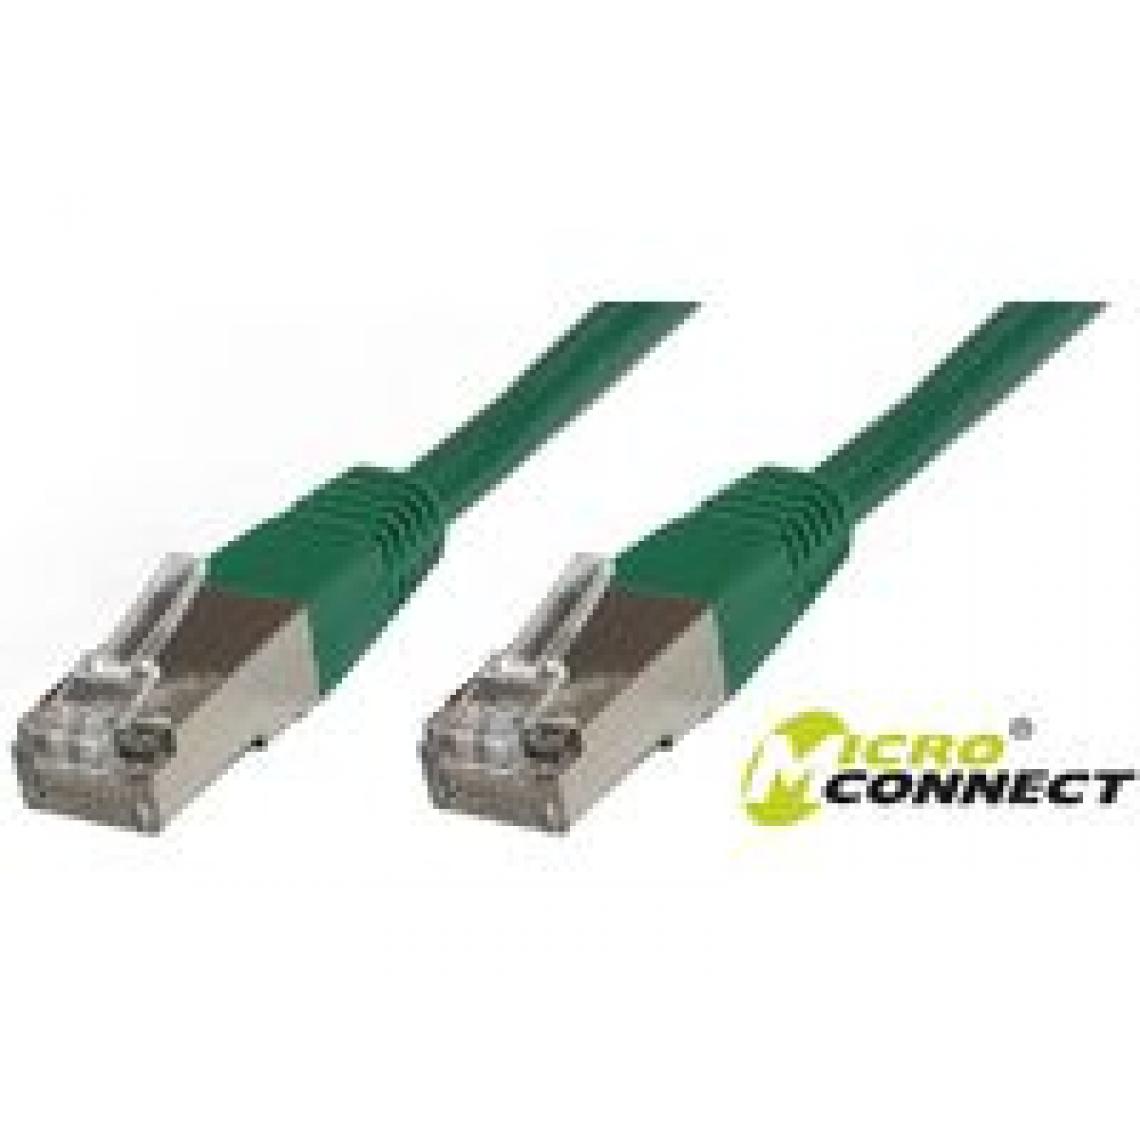 Disney Montres - Microconnect stp620g 20 m CAT6 F/UTP (FTP) Vert – Câble de réseau (RJ-45, RJ-45, Mâle/Mâle, Cat6, F/UTP (FTP), vert) - Câble antenne